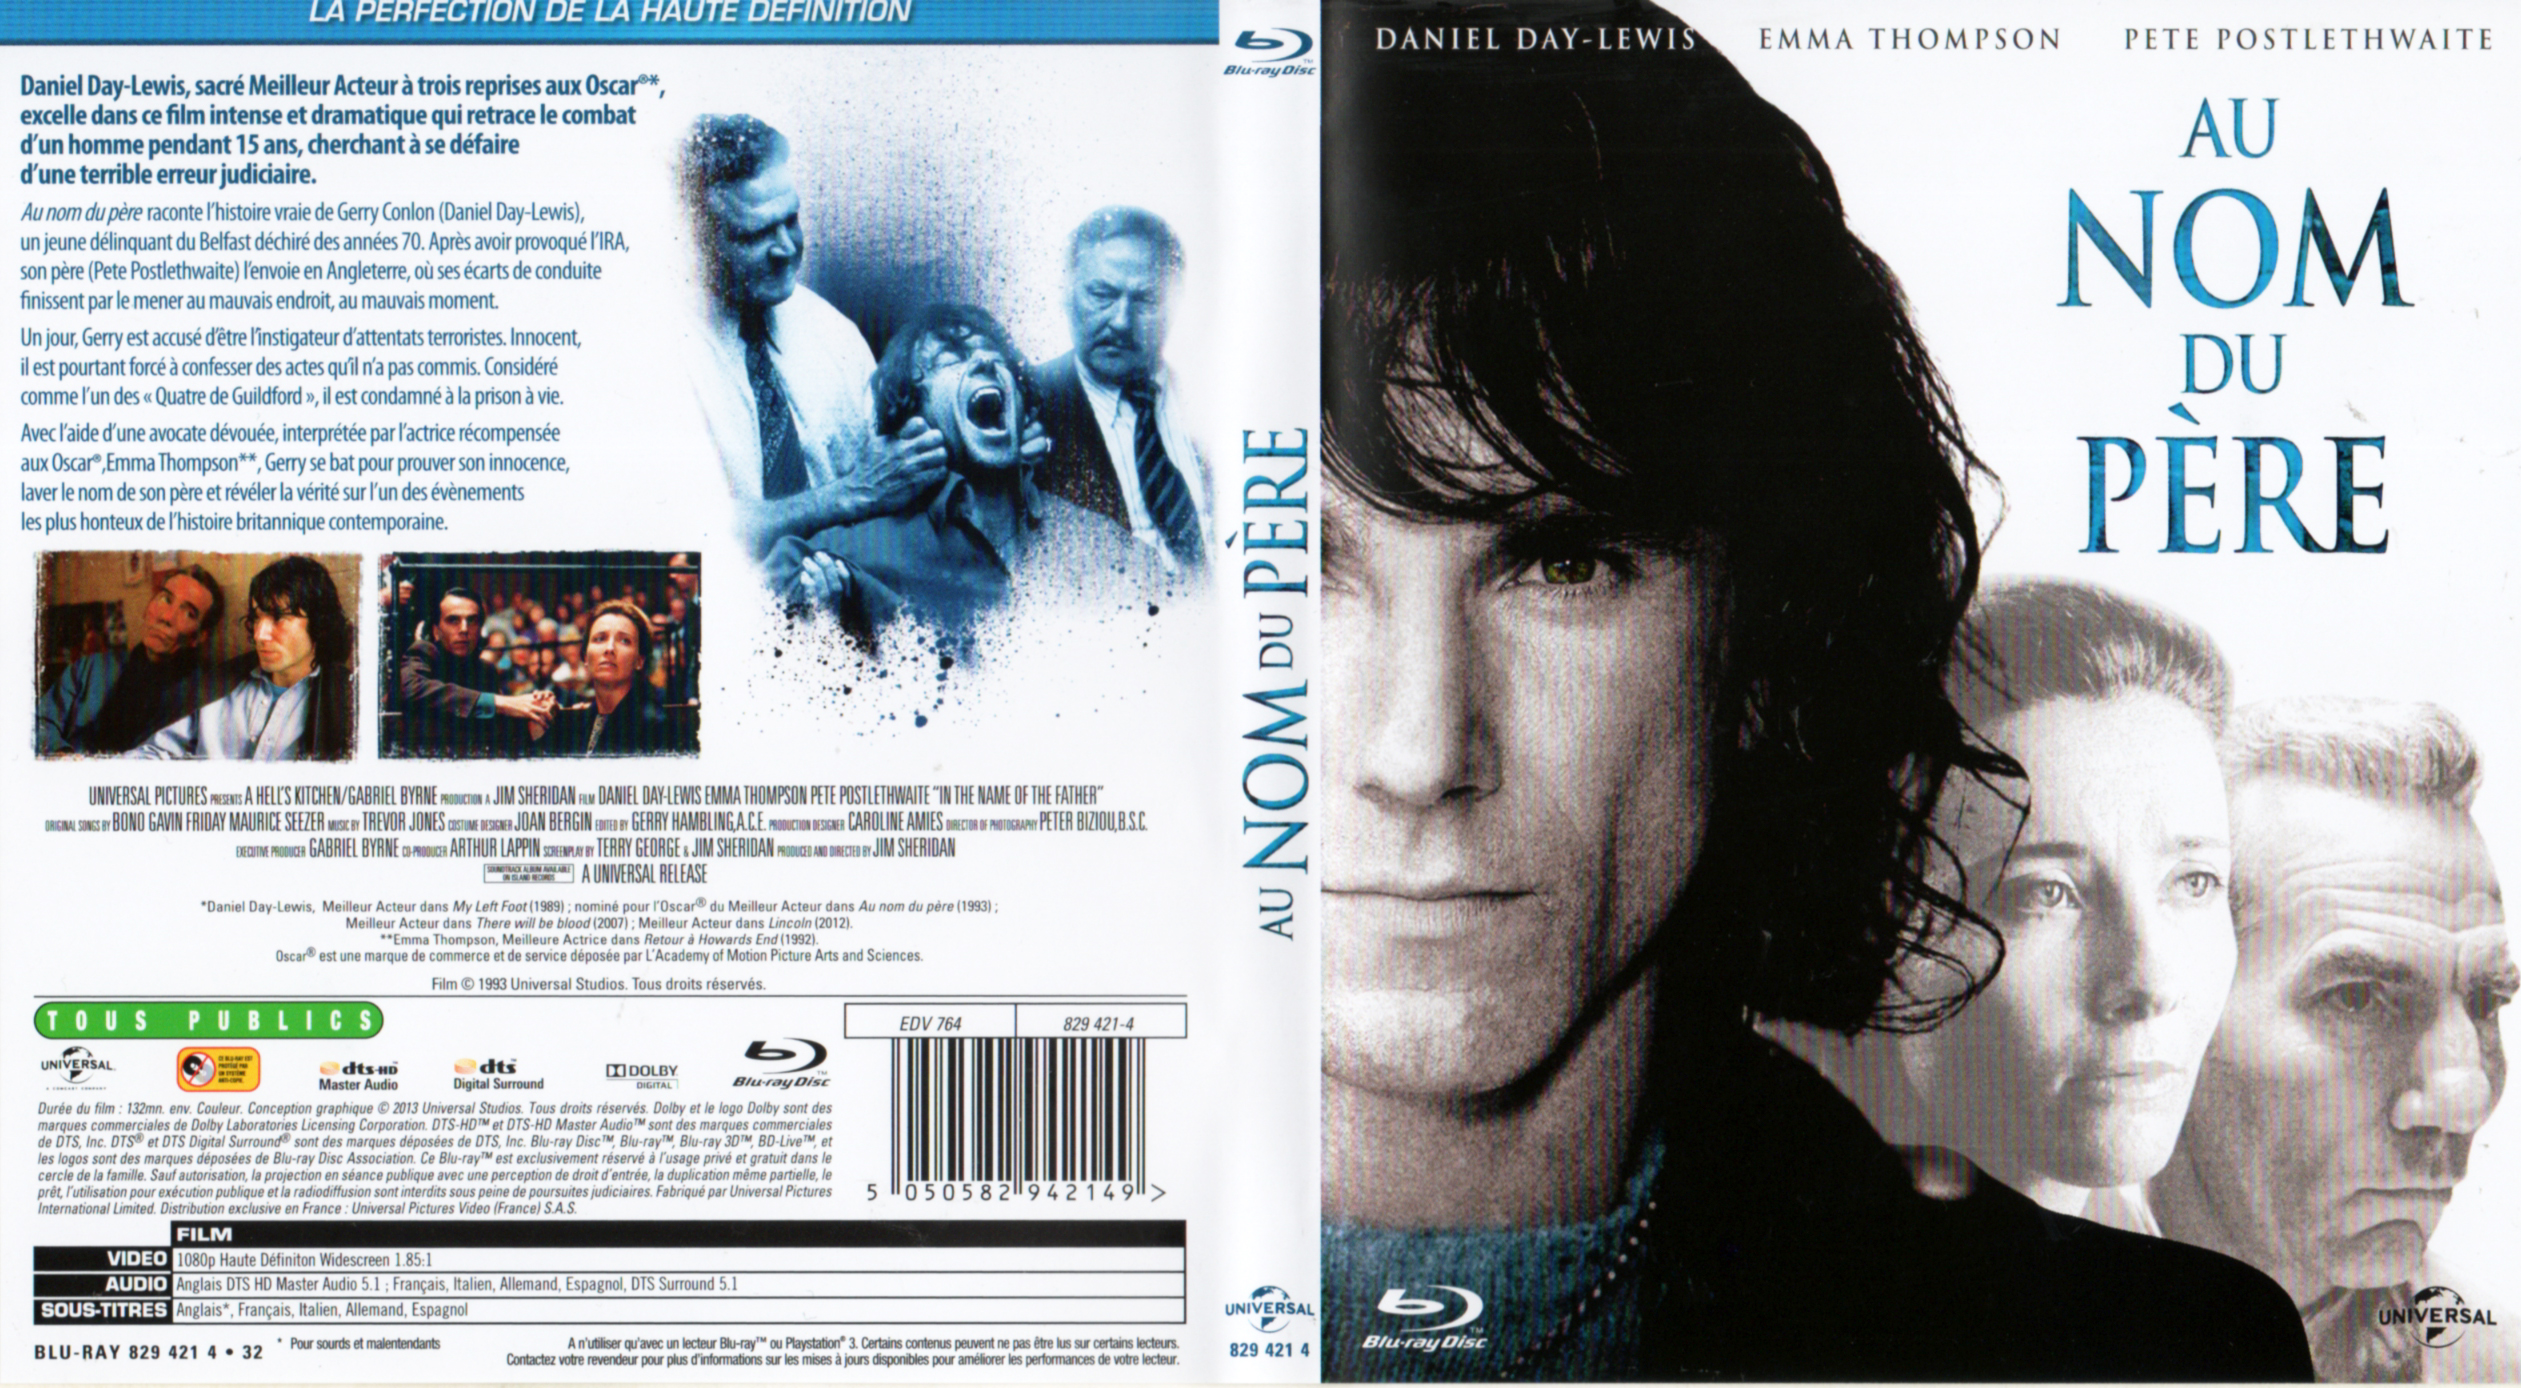 Jaquette DVD Au nom du pre (BLU-RAY)